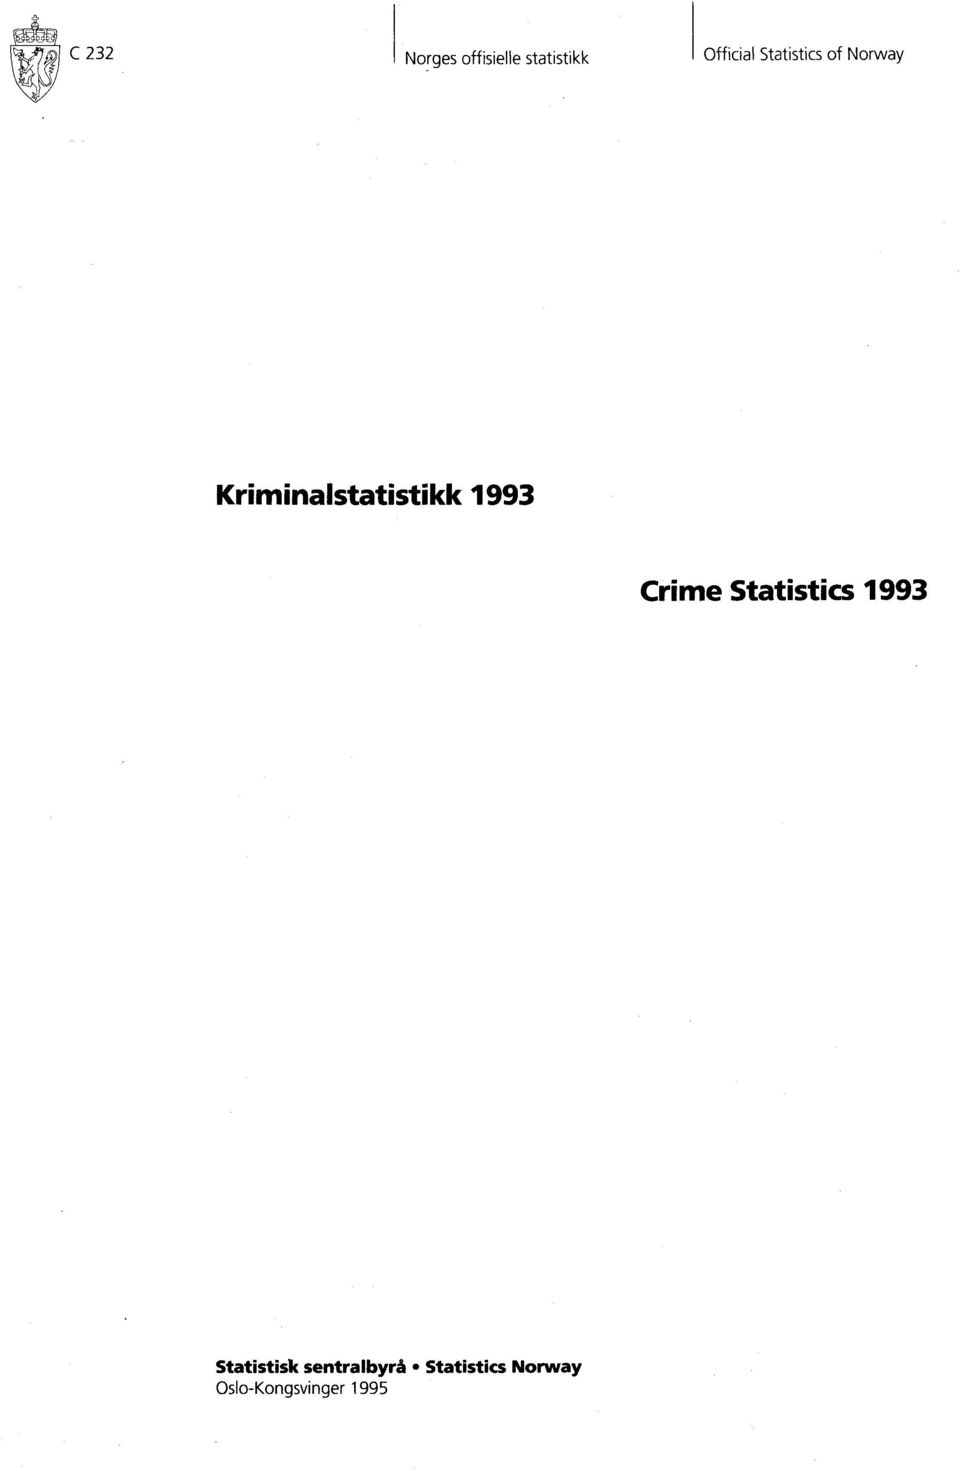 99 Crime Statistics 99 Statistisk